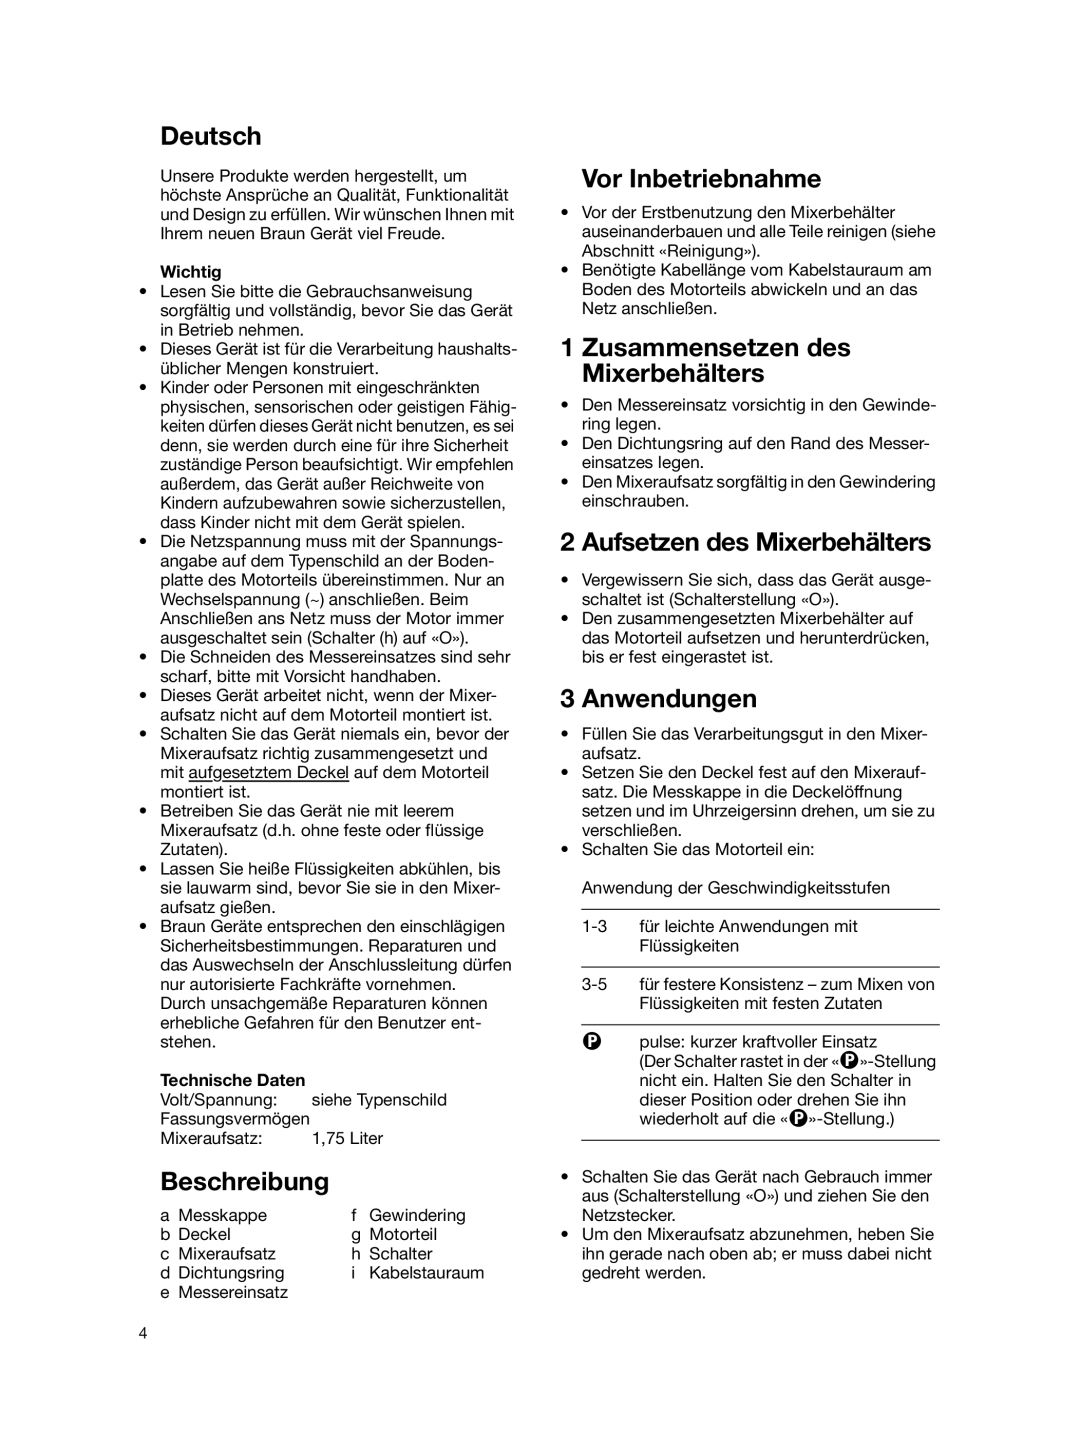 Braun MX 2050 BLACK Deutsch, Beschreibung, Vor Inbetriebnahme, Zusammensetzen des Mixerbehälters, Anwendungen, Wichtig 